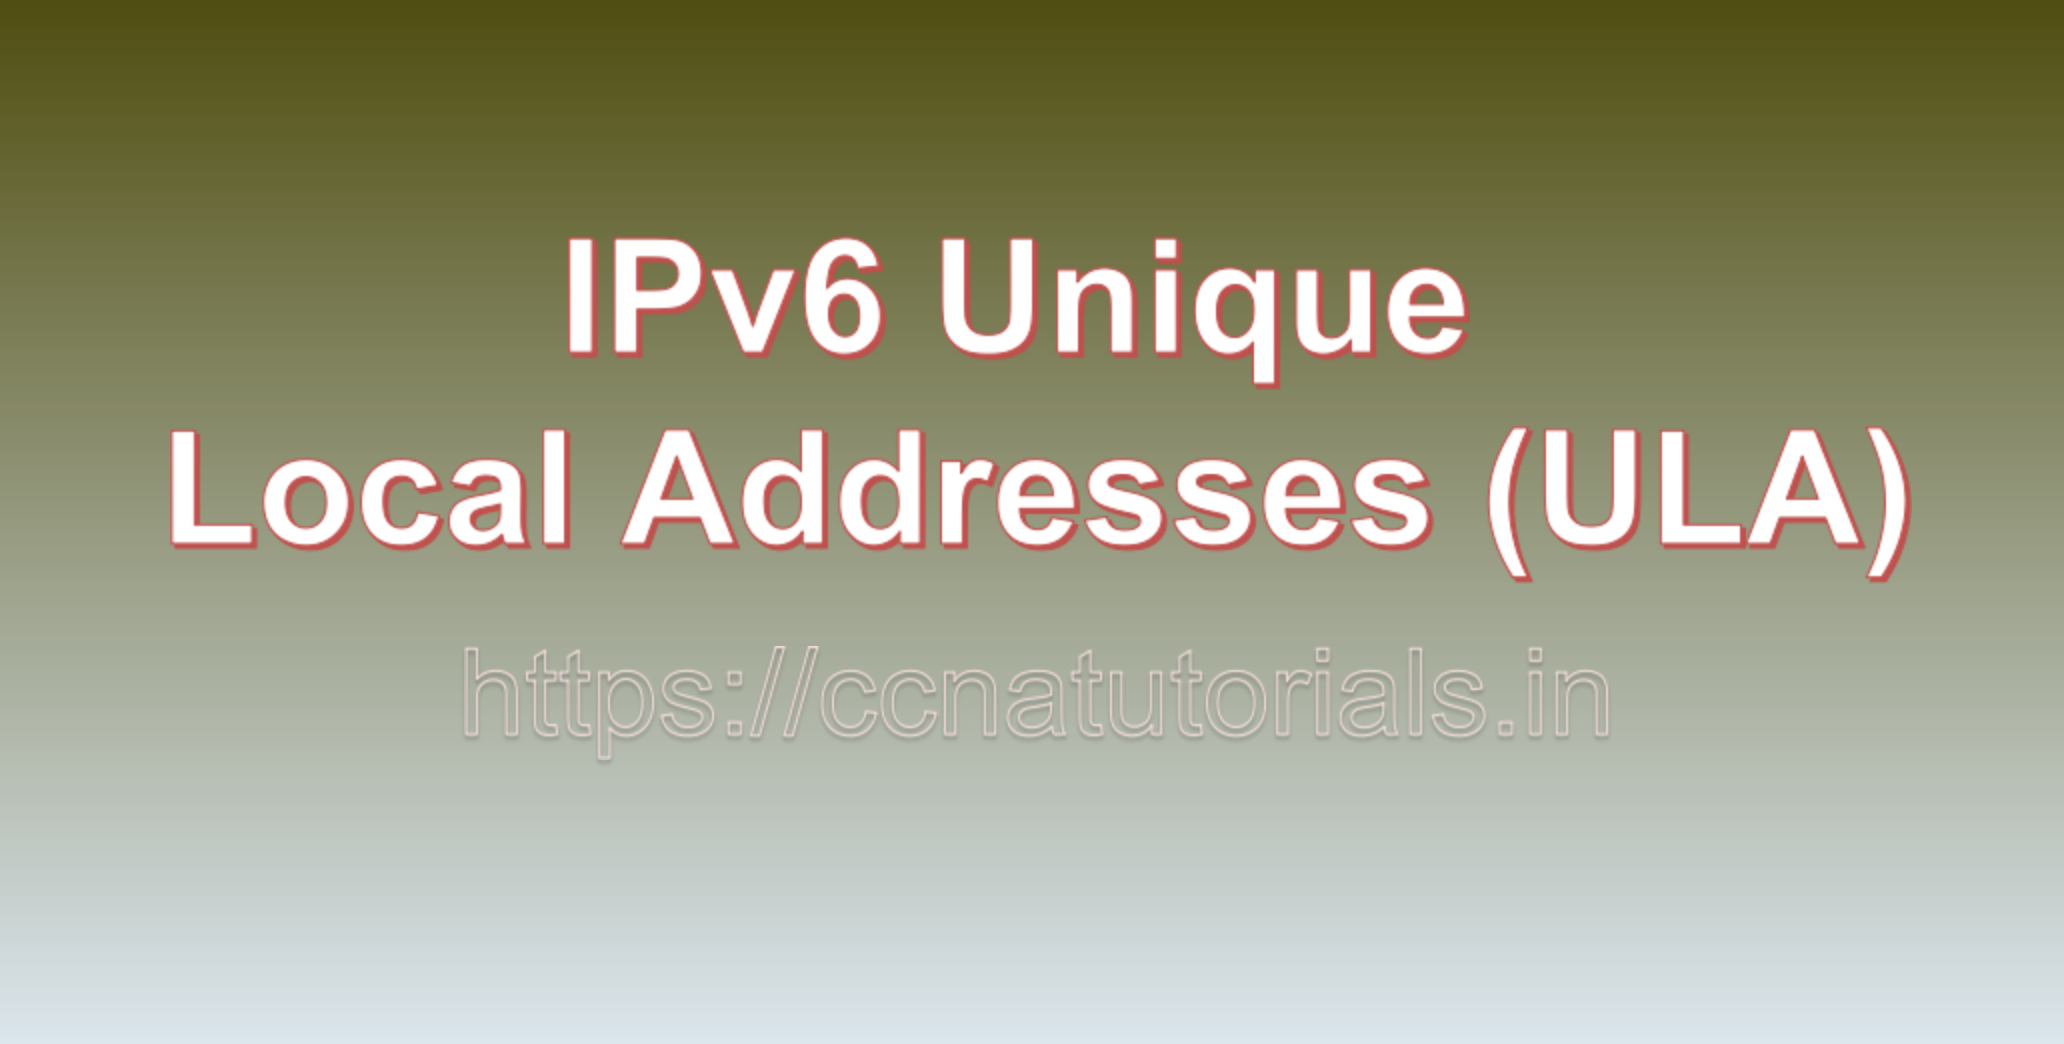 IPv6 Unique Local Addresses (ULA), ccna, CCNA TUTORIALS